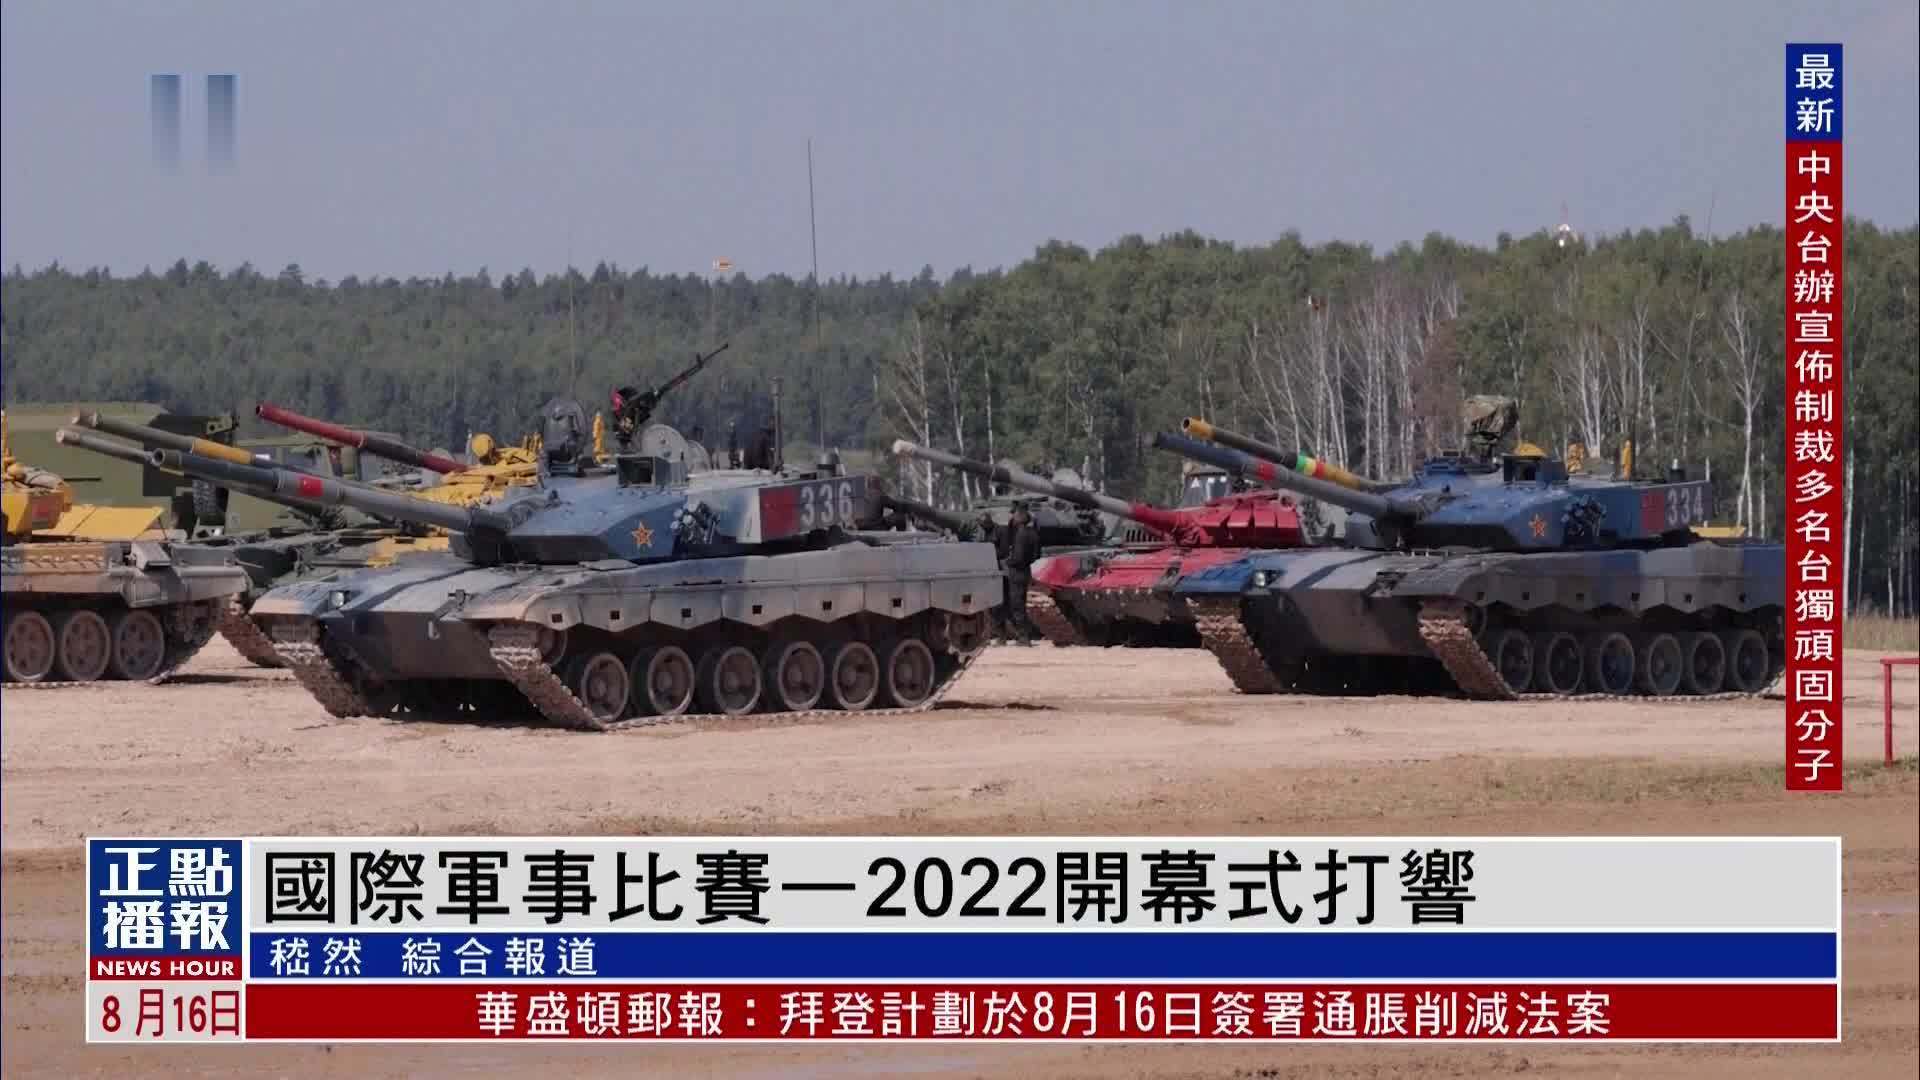 中俄伊承办国际军事比赛—2022 莫斯科郊外举行 37国参加普京出席并致词